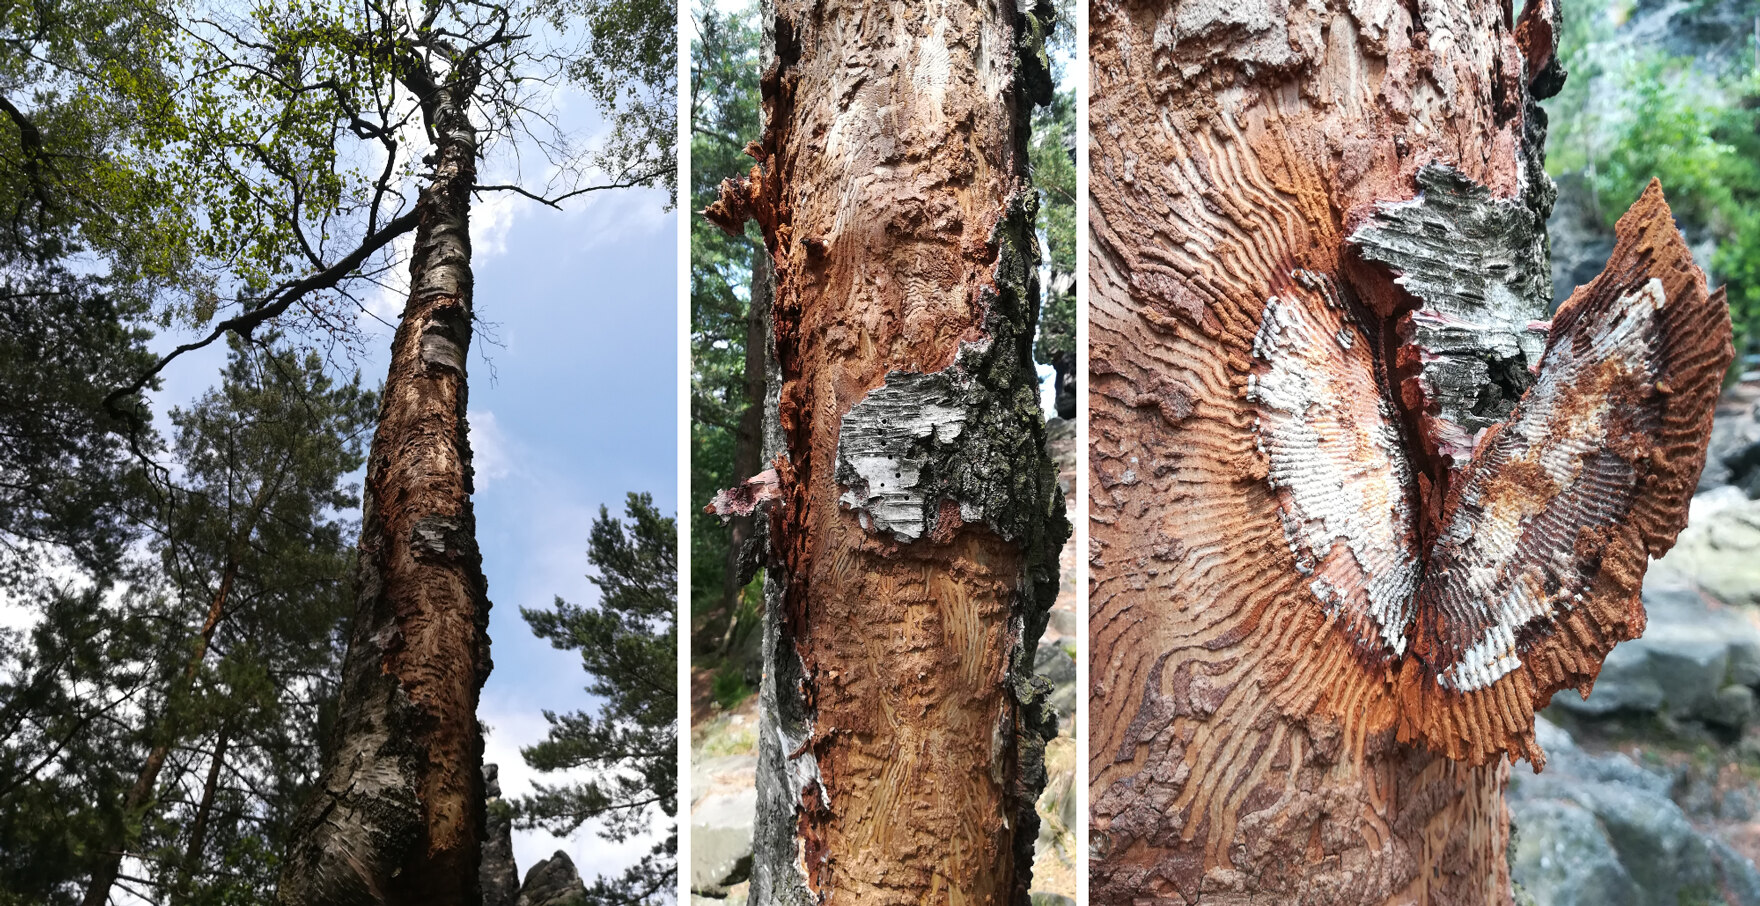 Links die Ansicht des Gesamtbaumes, in der Mitte ein Splintkäferbrutbild und rechts der Pilzbefall im Brutbild.